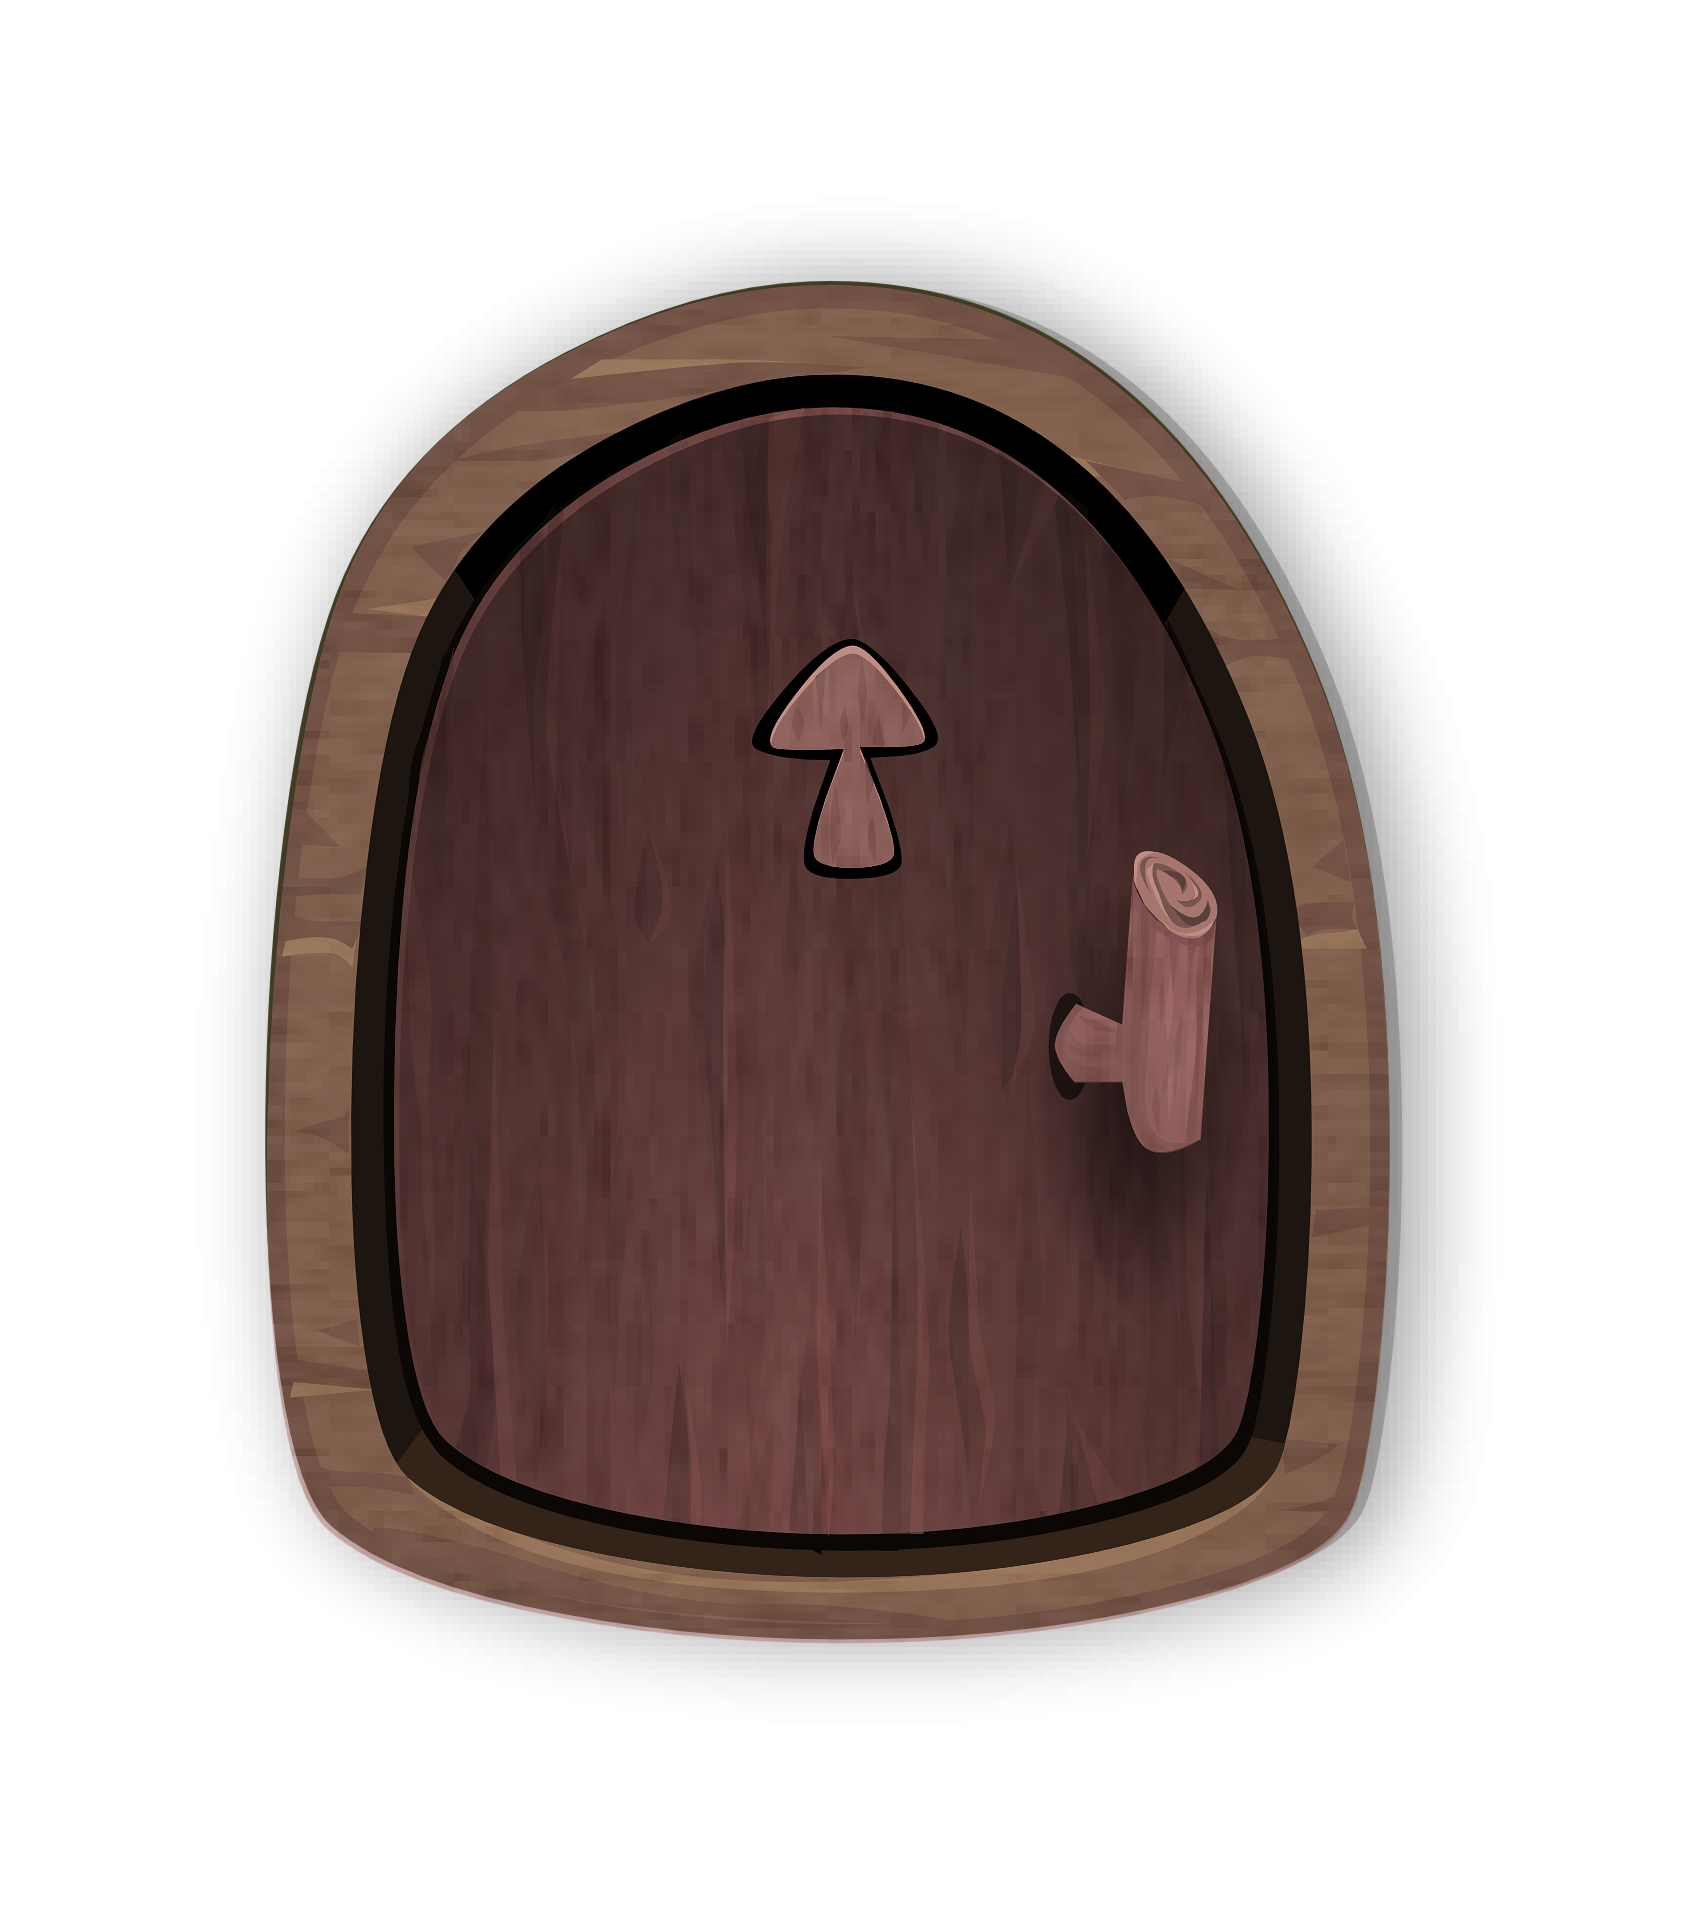 Cartoon wooden door with arrow pointing in.